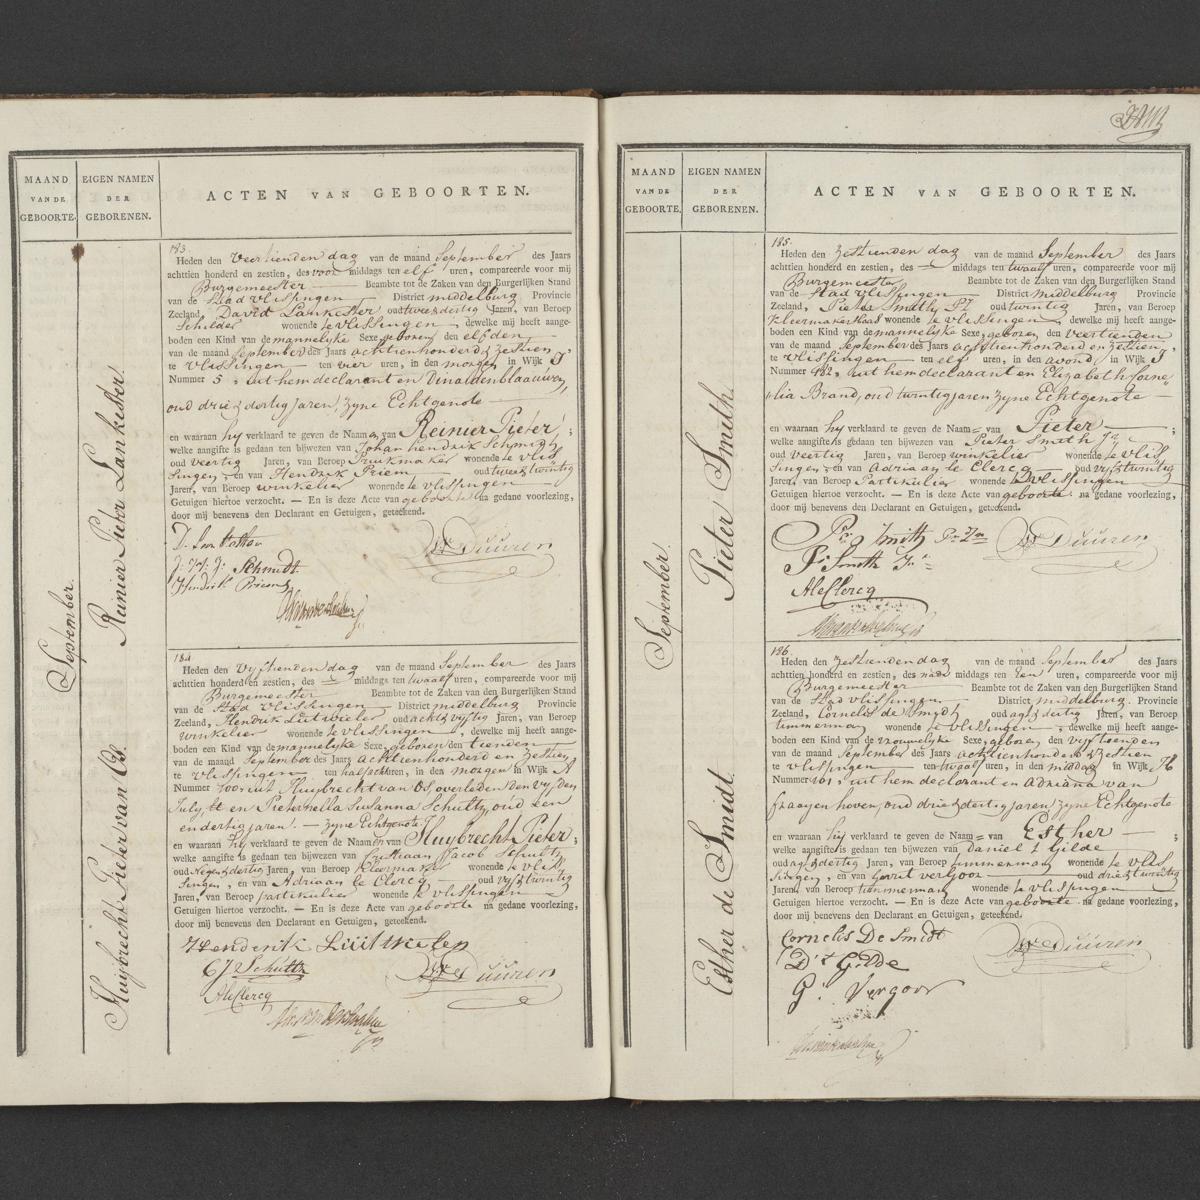 Civil registry of births, Vlissingen, 1816, records 183-186